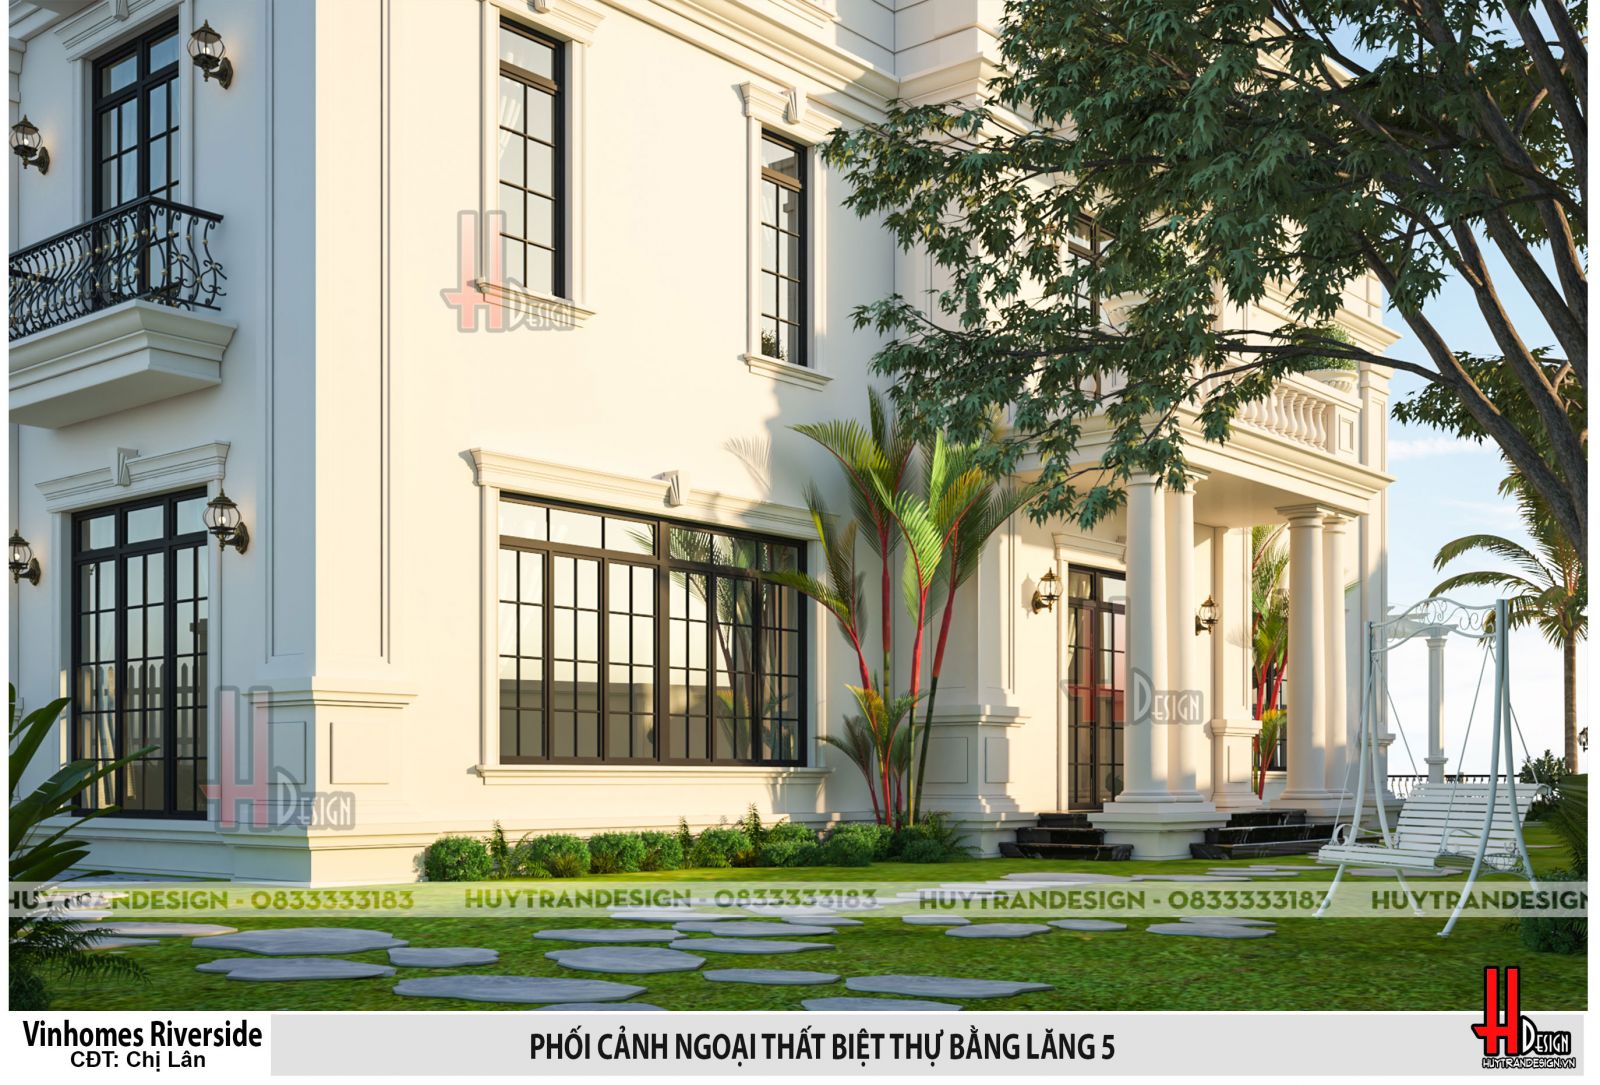 Mẫu nhà đẹp - Huytrandesign tư vấn, thiết kế, thi công, sửa chữa nhà đẹp tại Long Biên, Hà Nội - v3